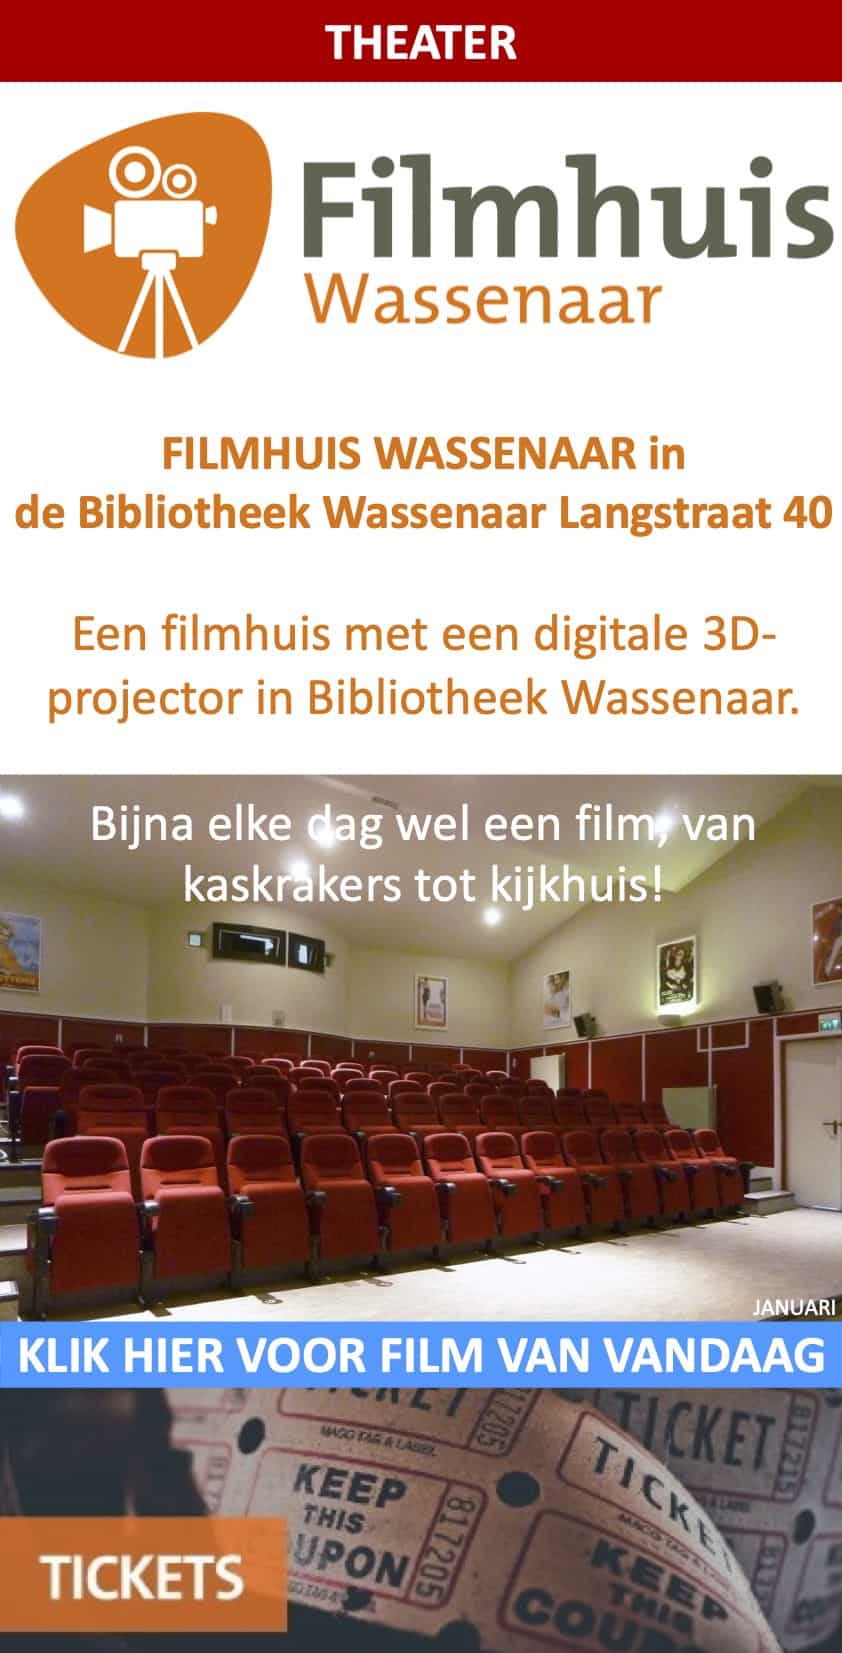 Filmhuis Wassenaar in de Bibliotheek Langstraat 40 januari